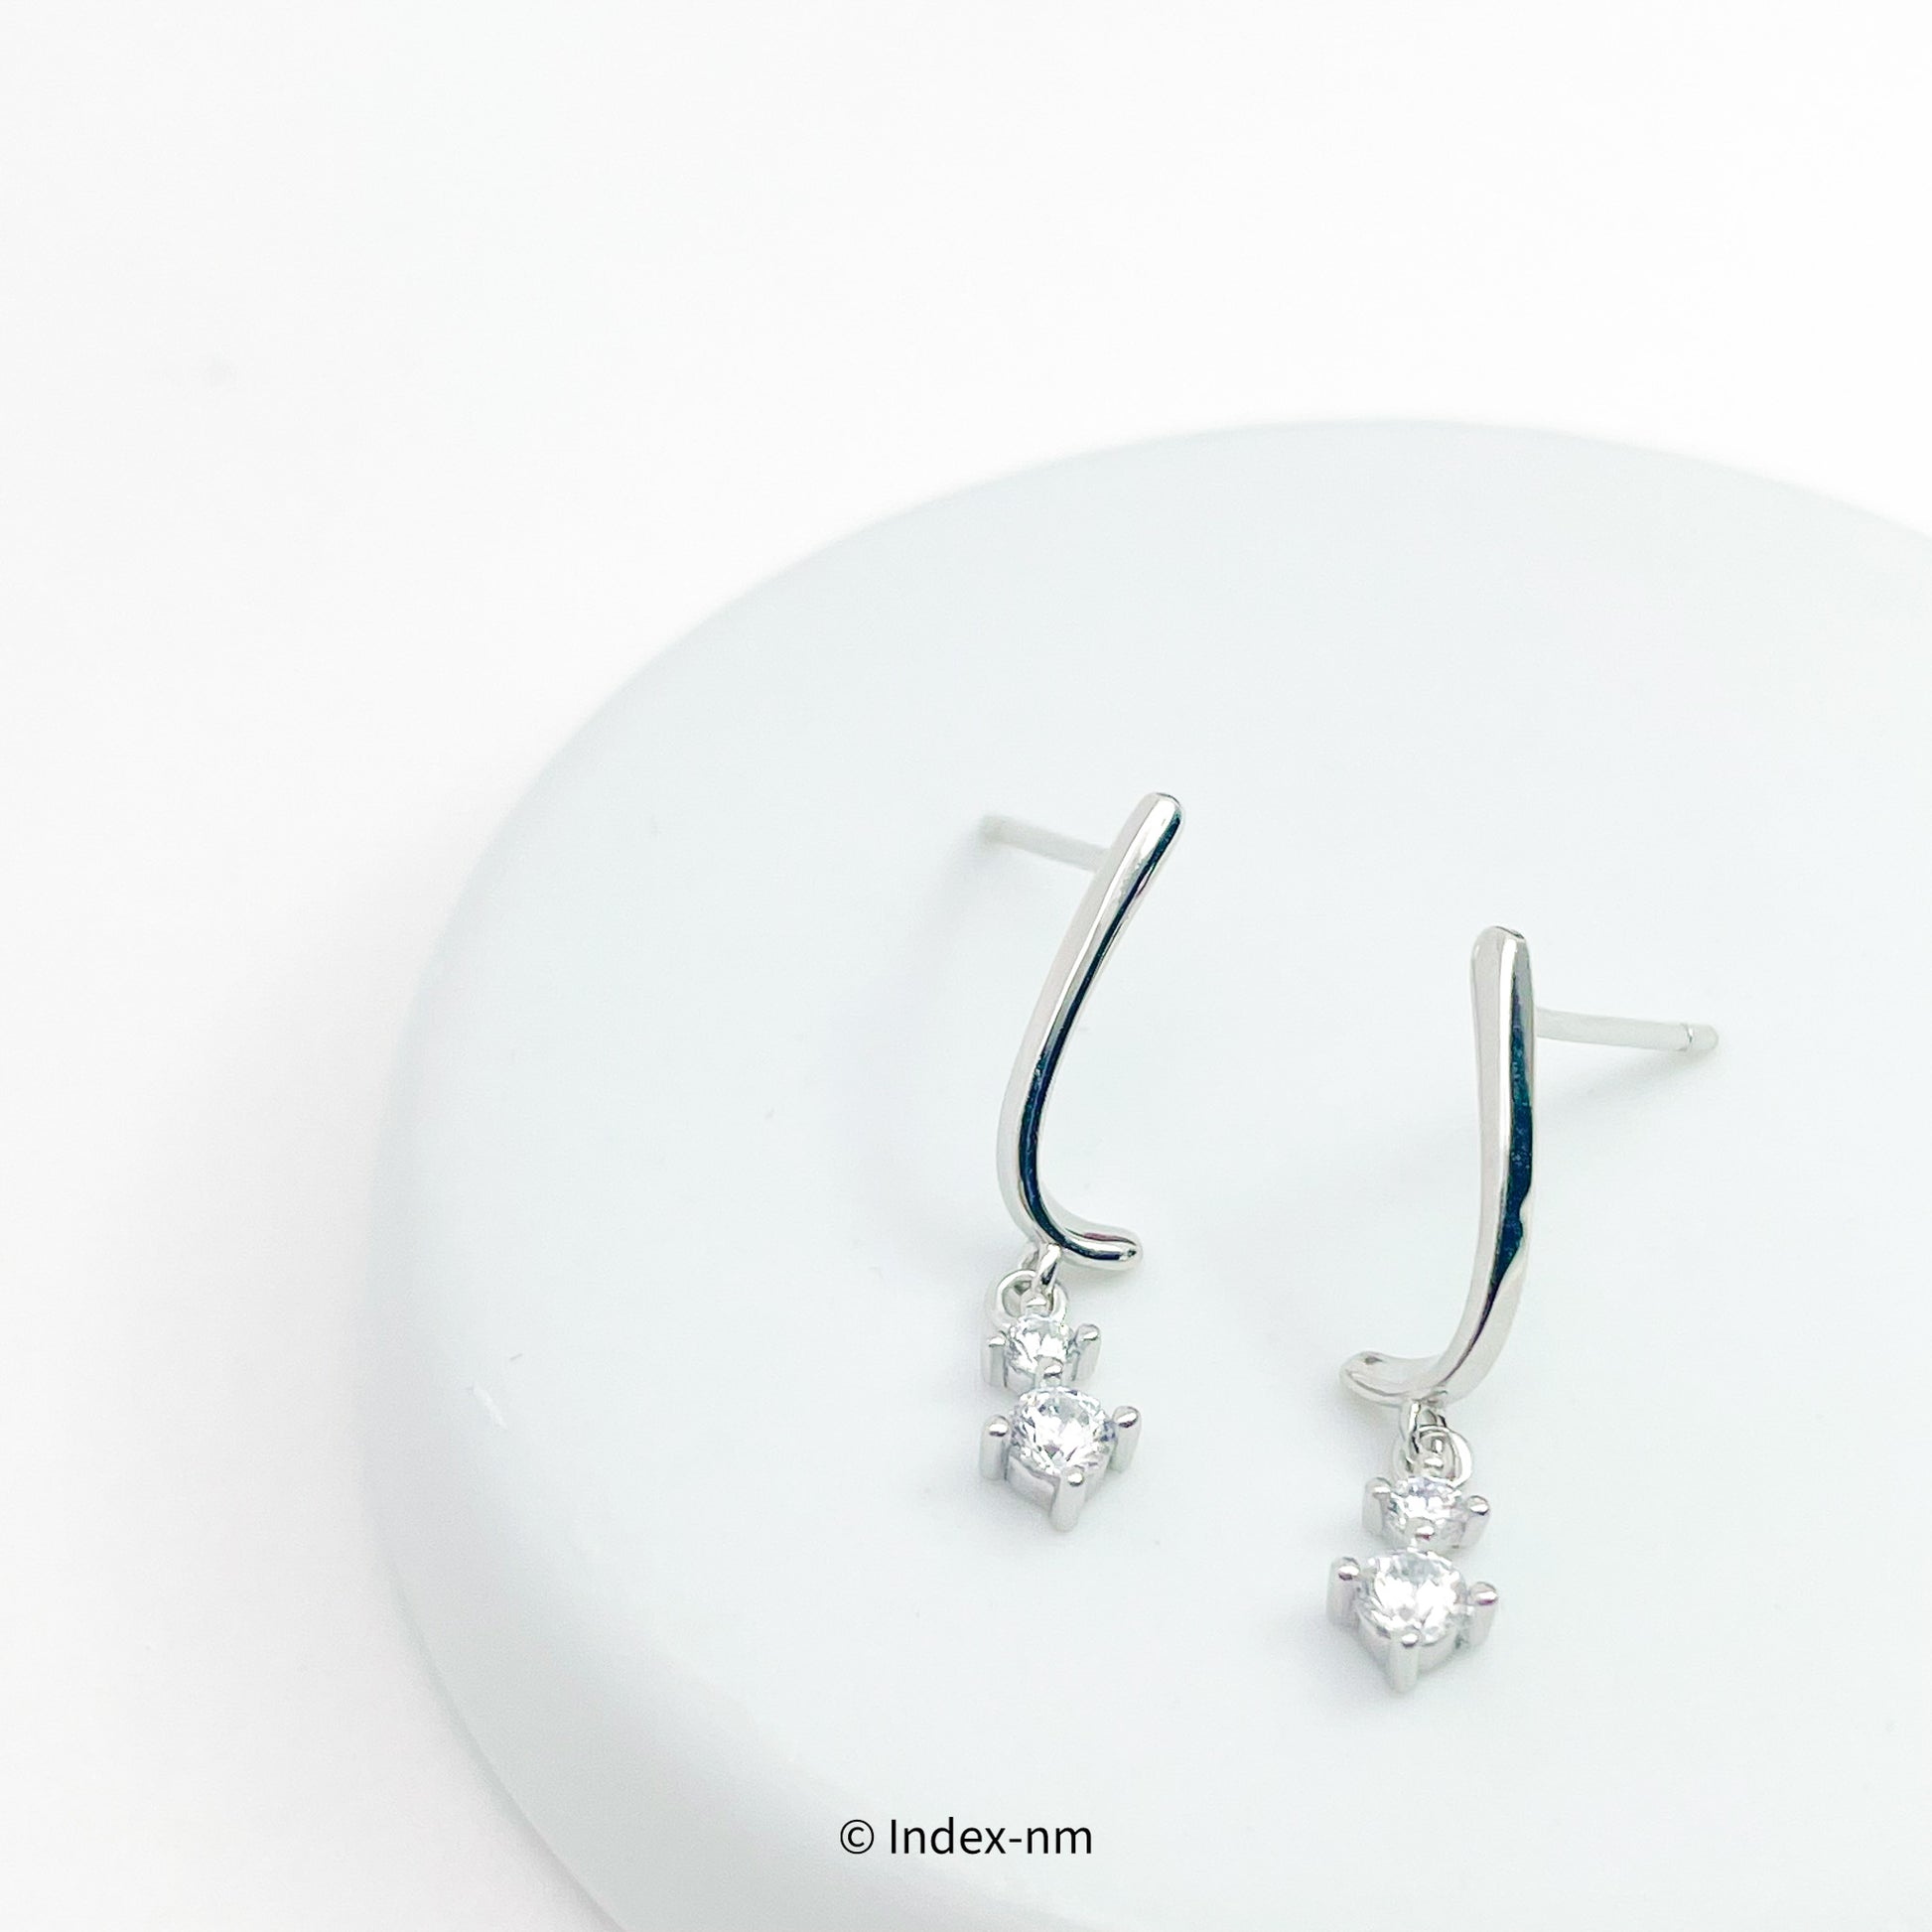 Dainty Simple Sterling Silver Drop Earrings